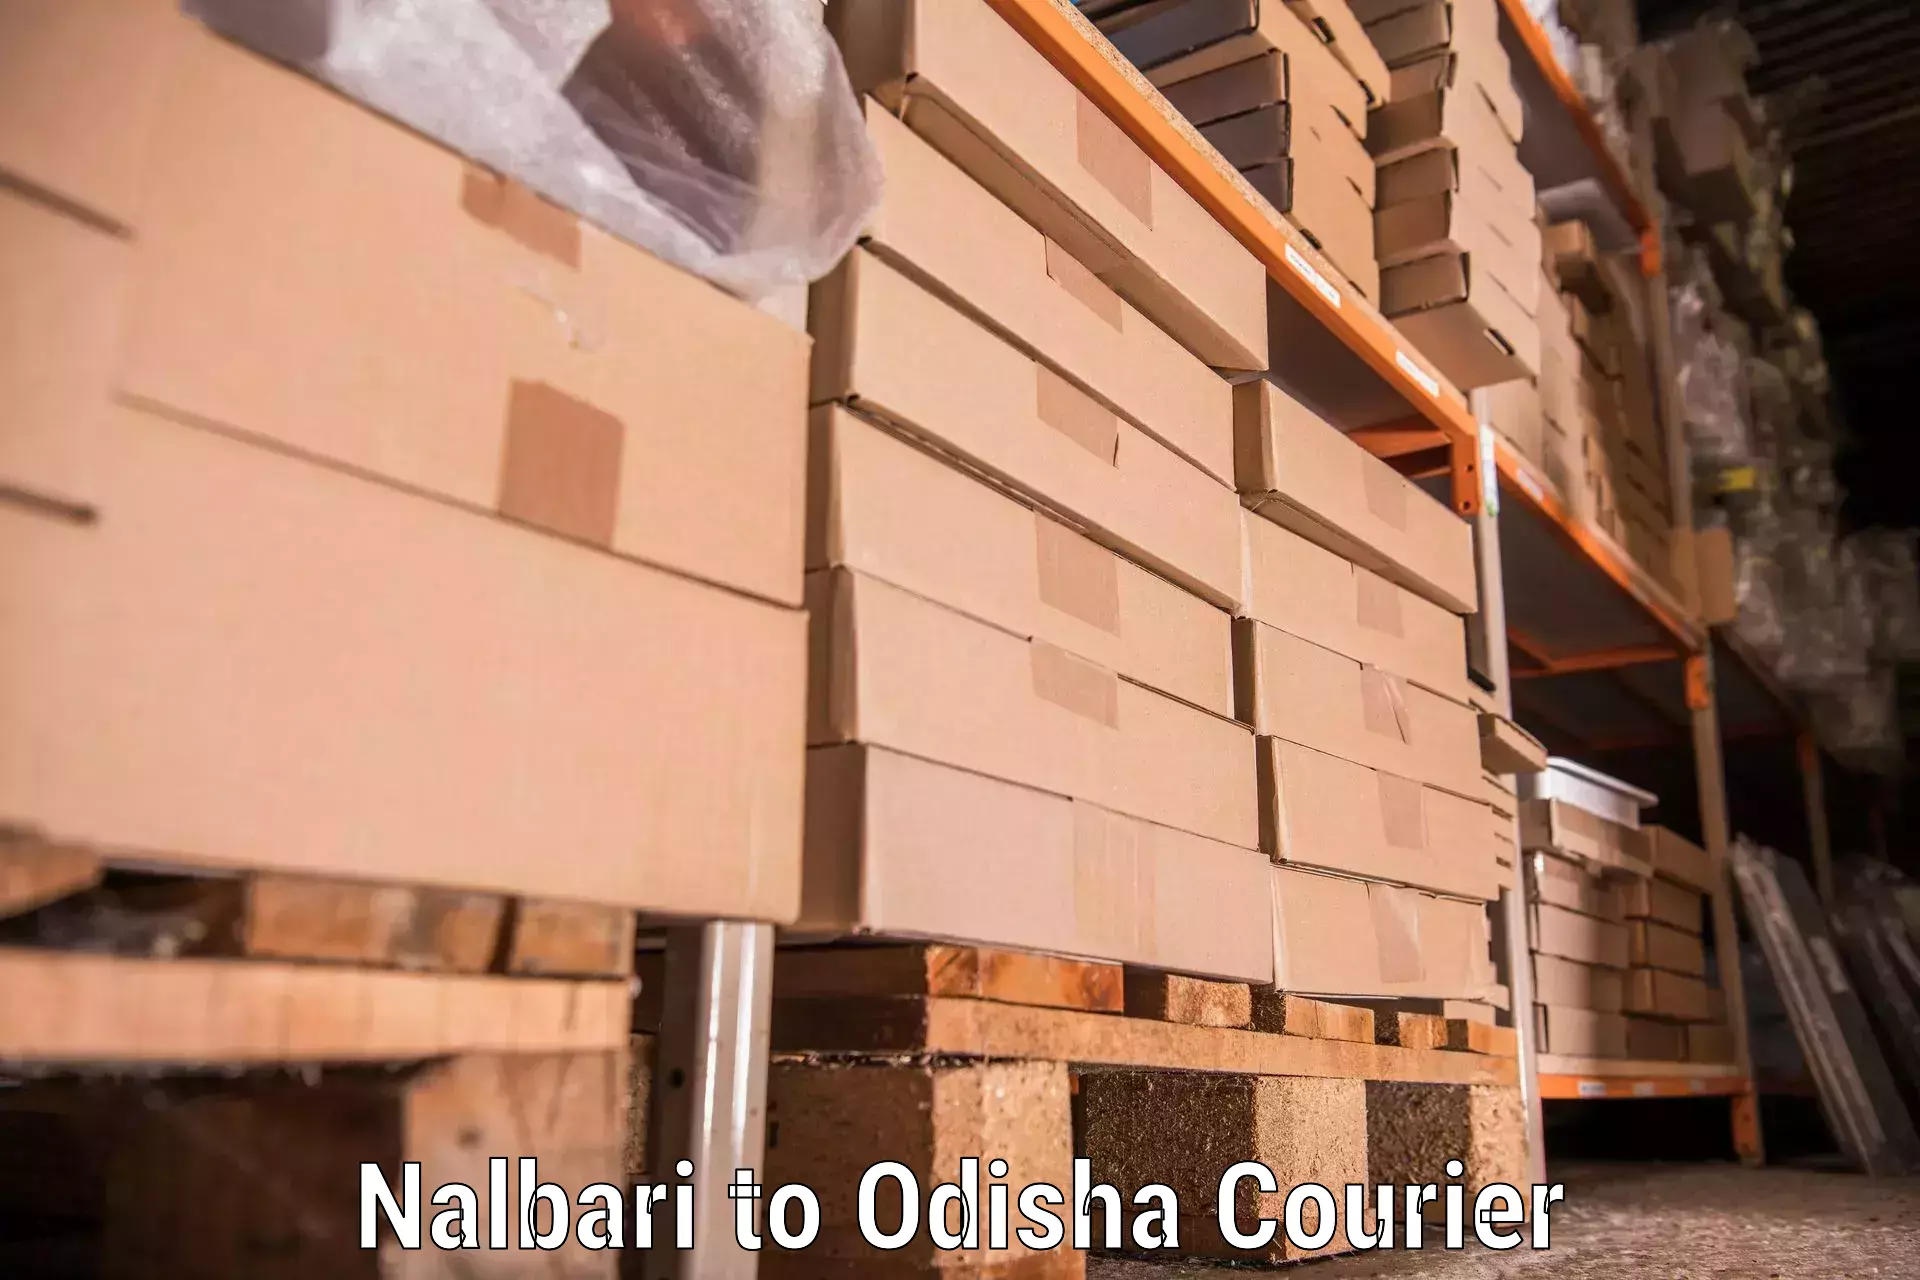 Customized moving experience in Nalbari to Patkura